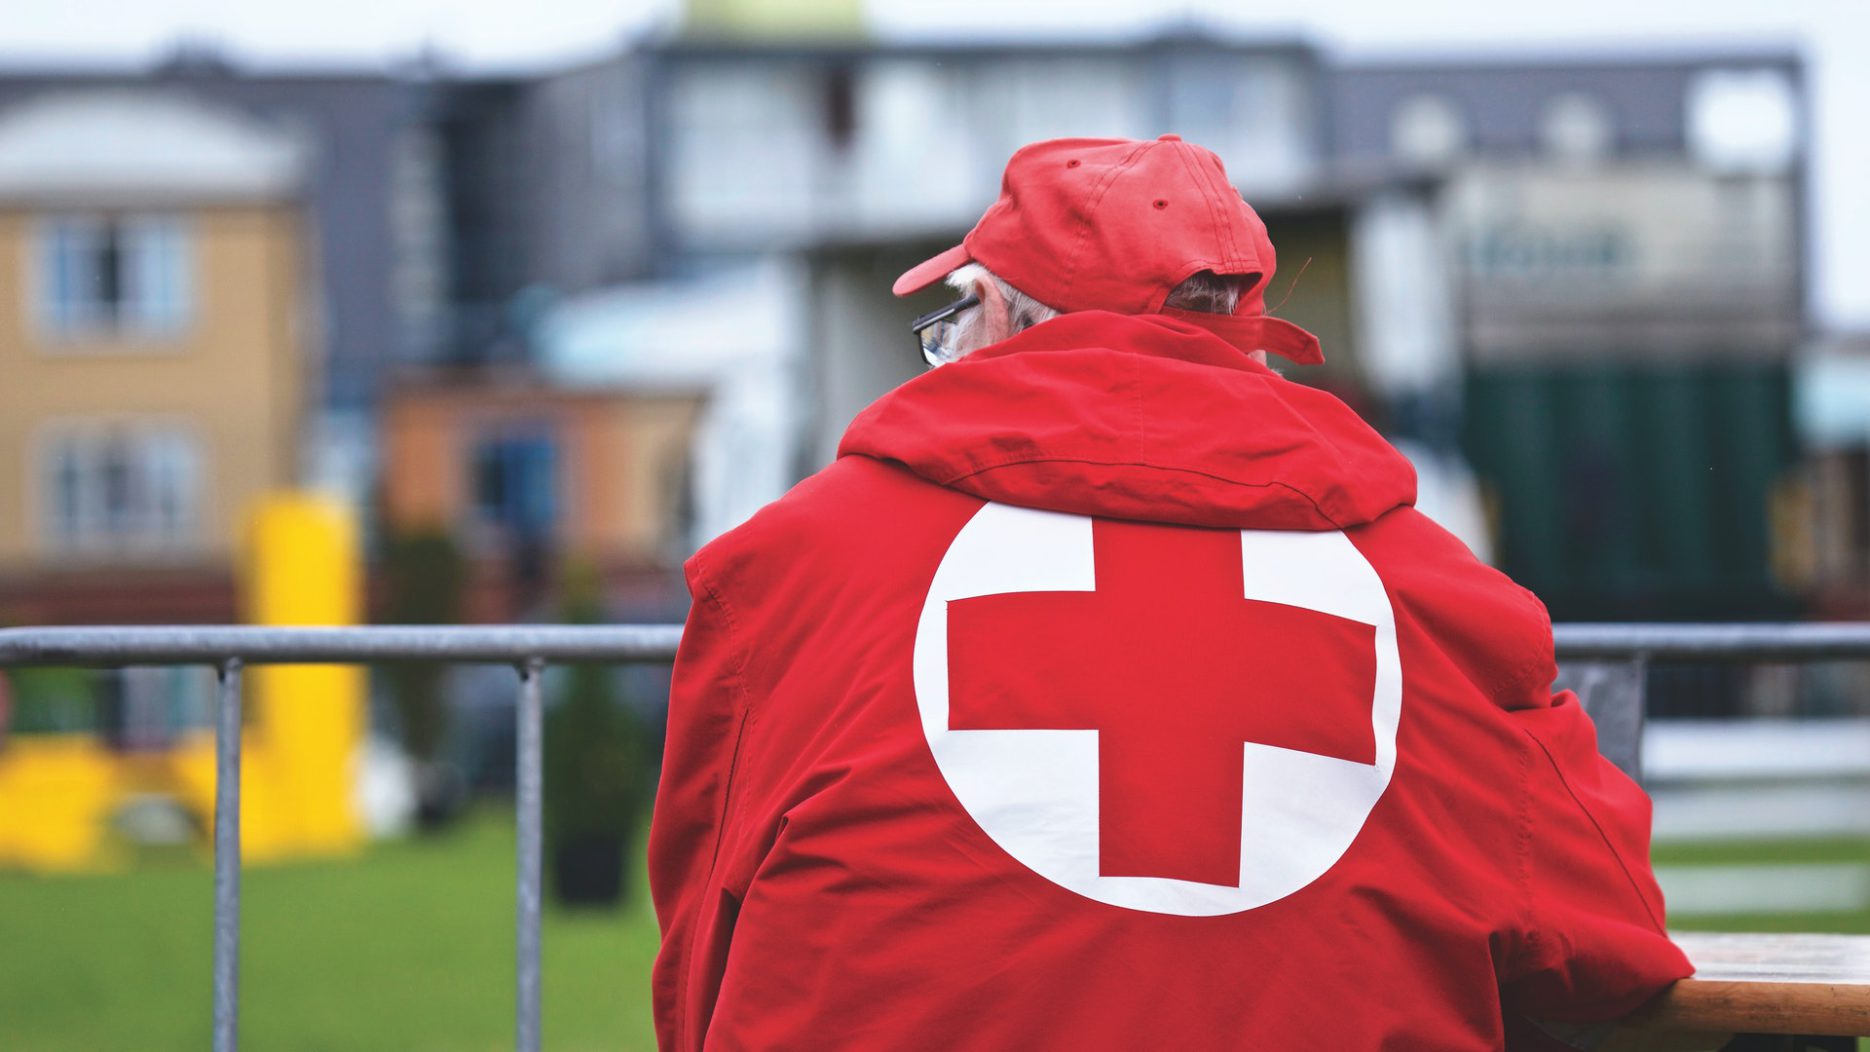 Člen Červeného kříže otočený zády